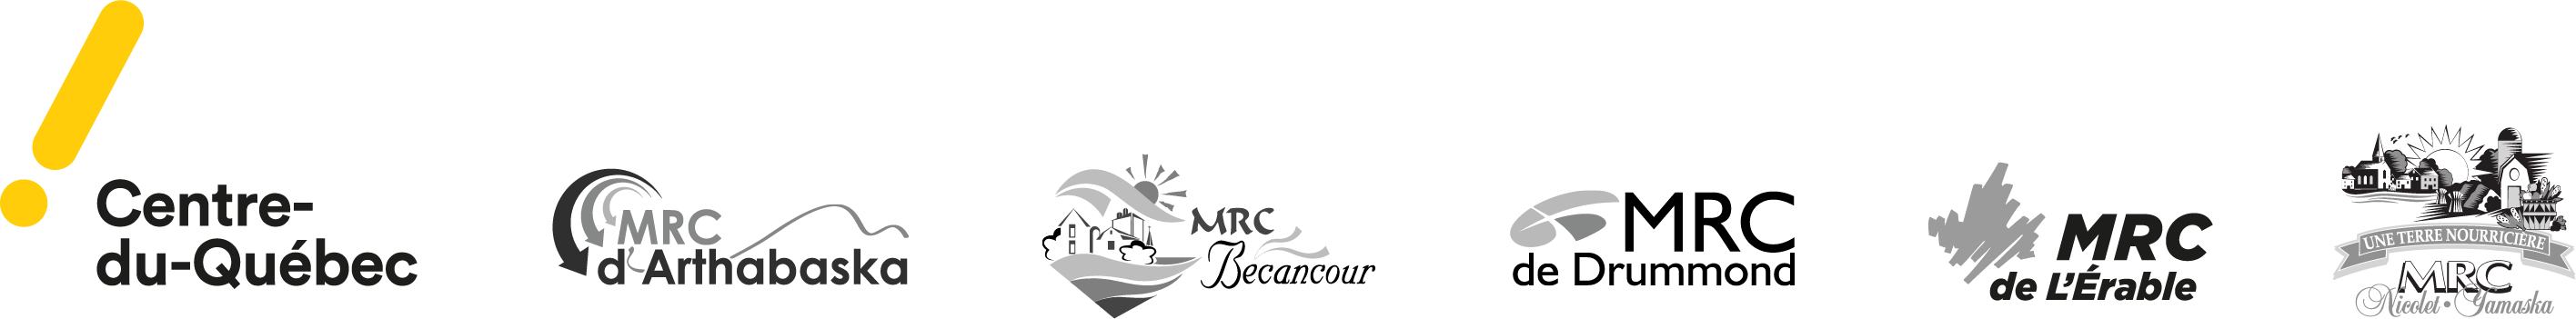 Logos du Centre-du-Québec, de la MRC d'Arthabaska, de la MRC de Bécancour, de la MRC de L'Érable, de la MRC de Drummond et de la MRC de Nicolet-Yamaska.